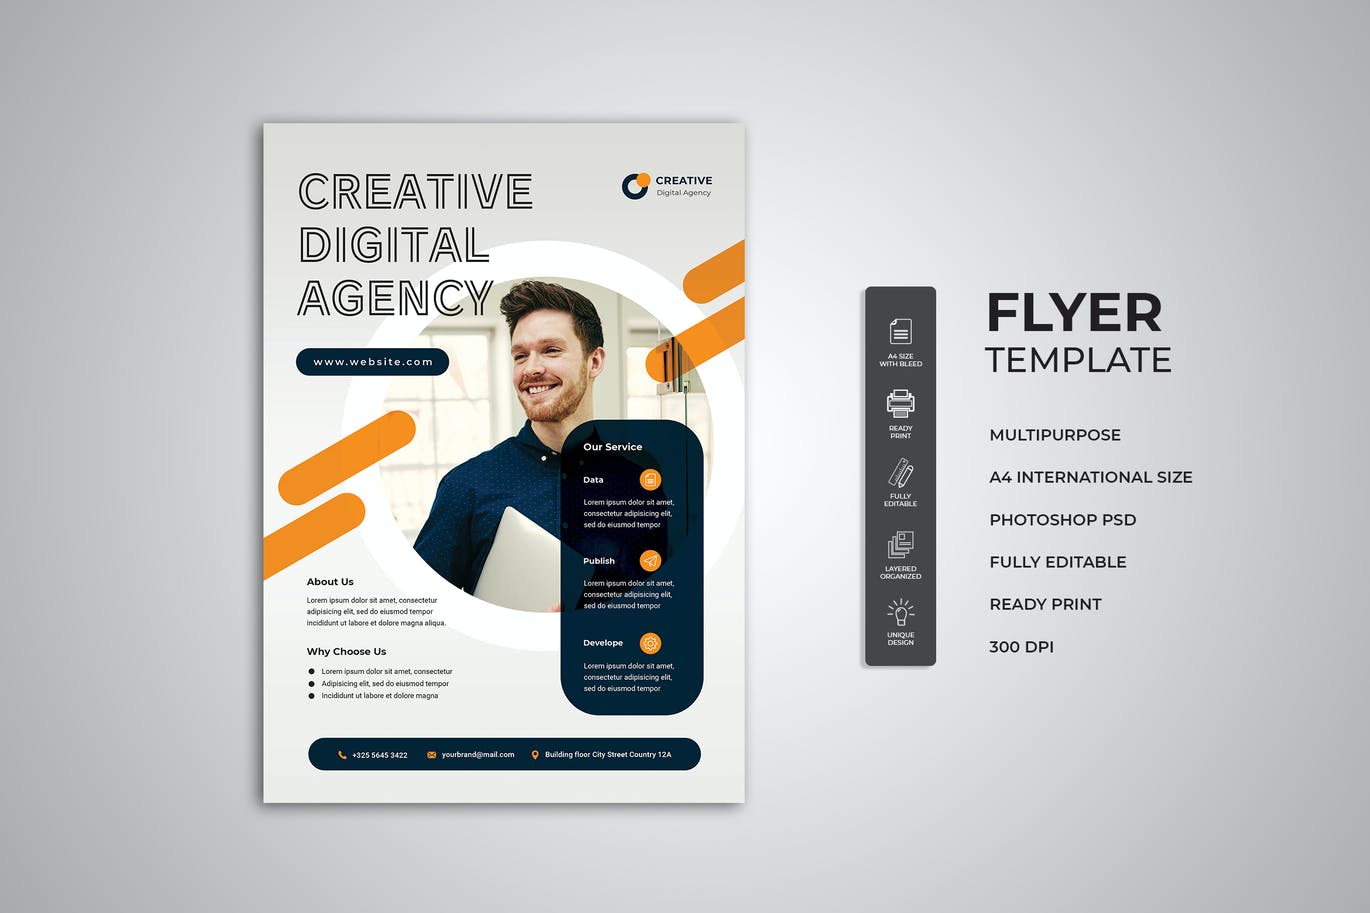 创意数字机构宣传单素材 Creative Digital Agency Flyer 设计素材 第1张